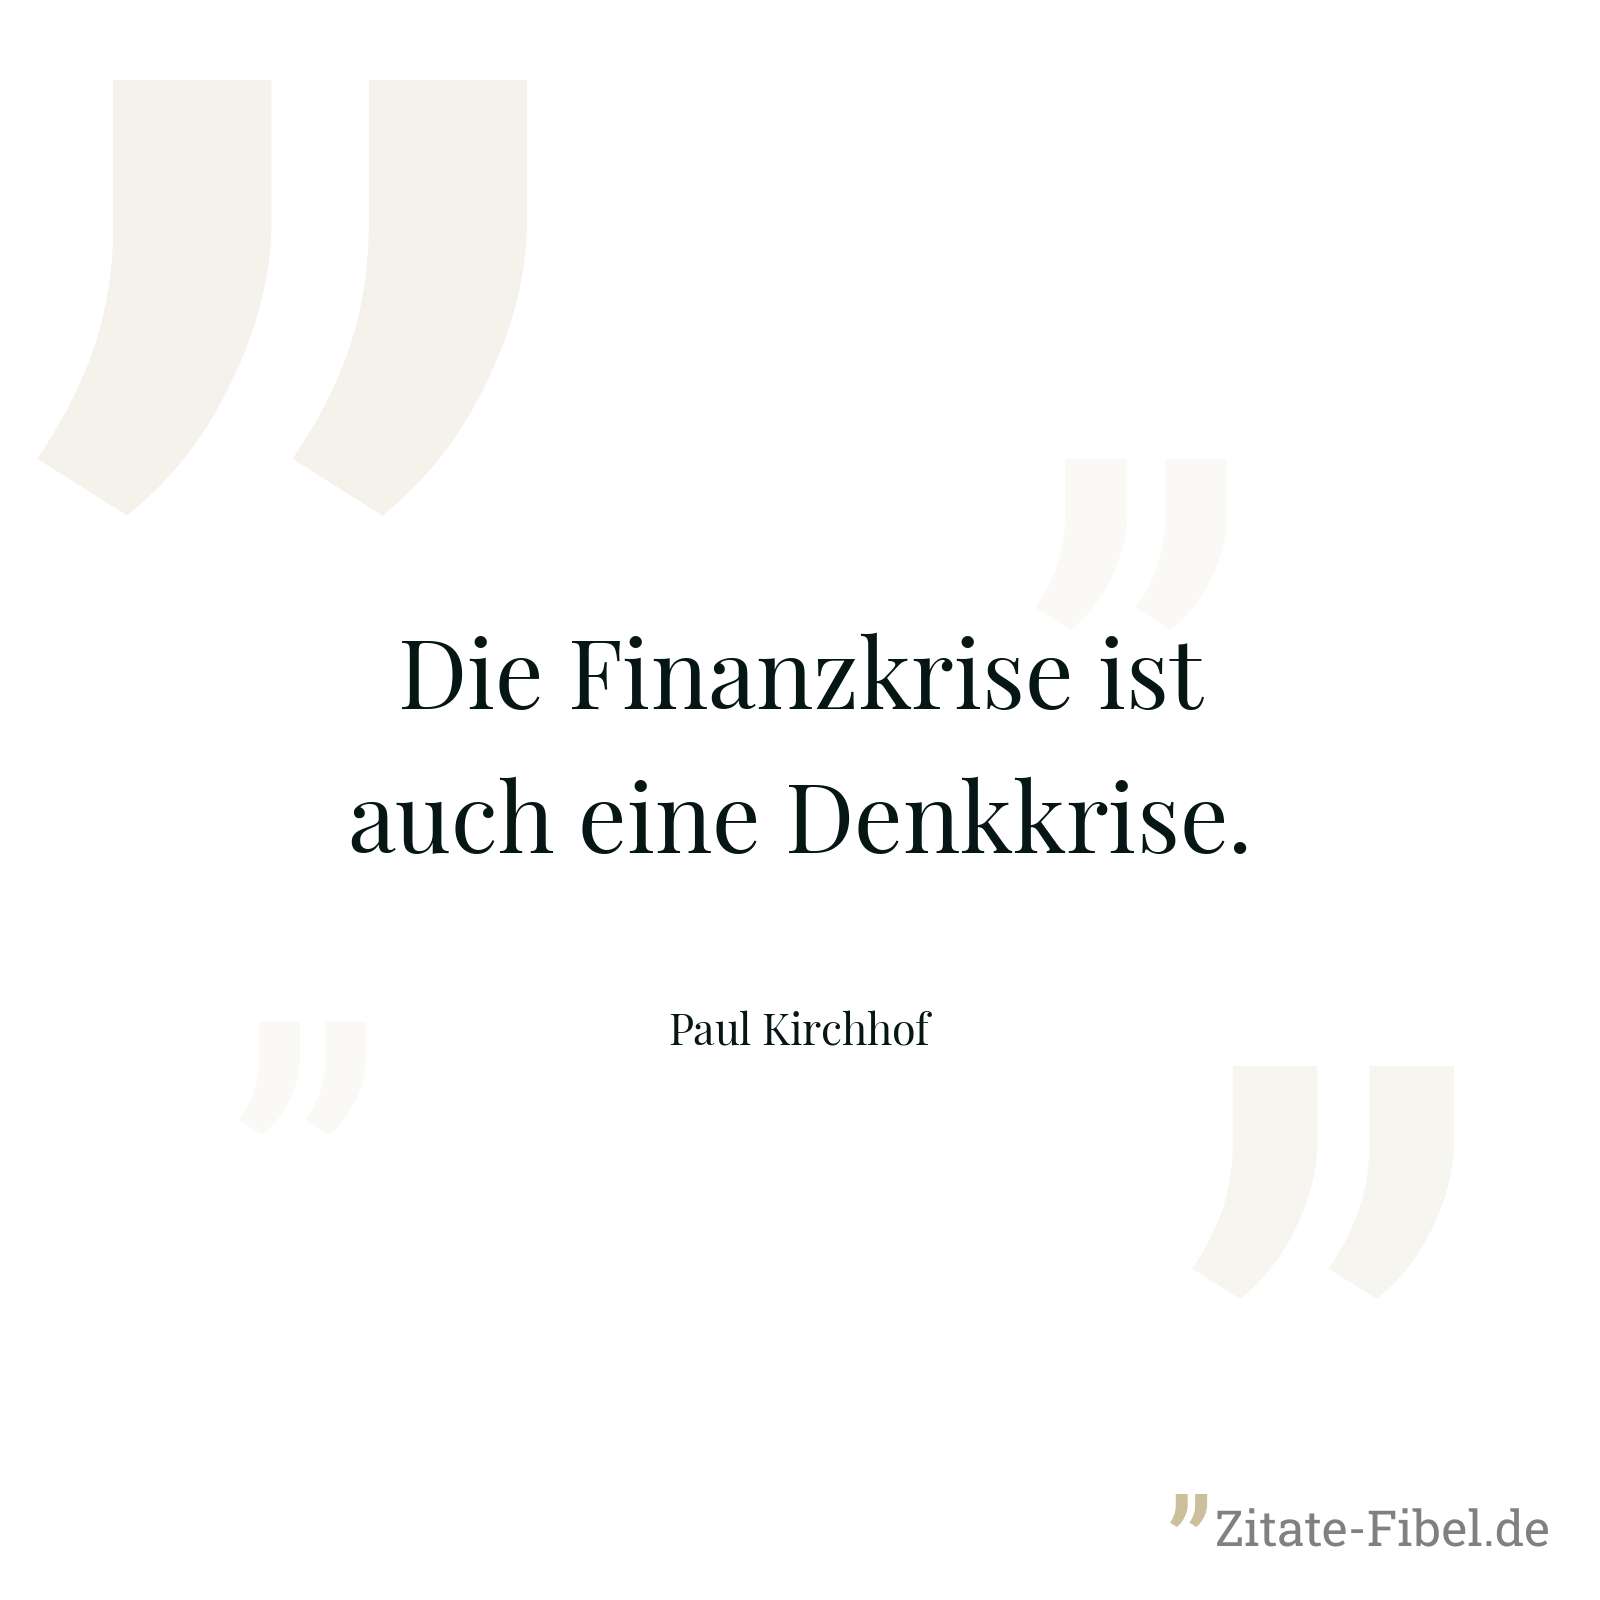 Die Finanzkrise ist auch eine Denkkrise. - Paul Kirchhof